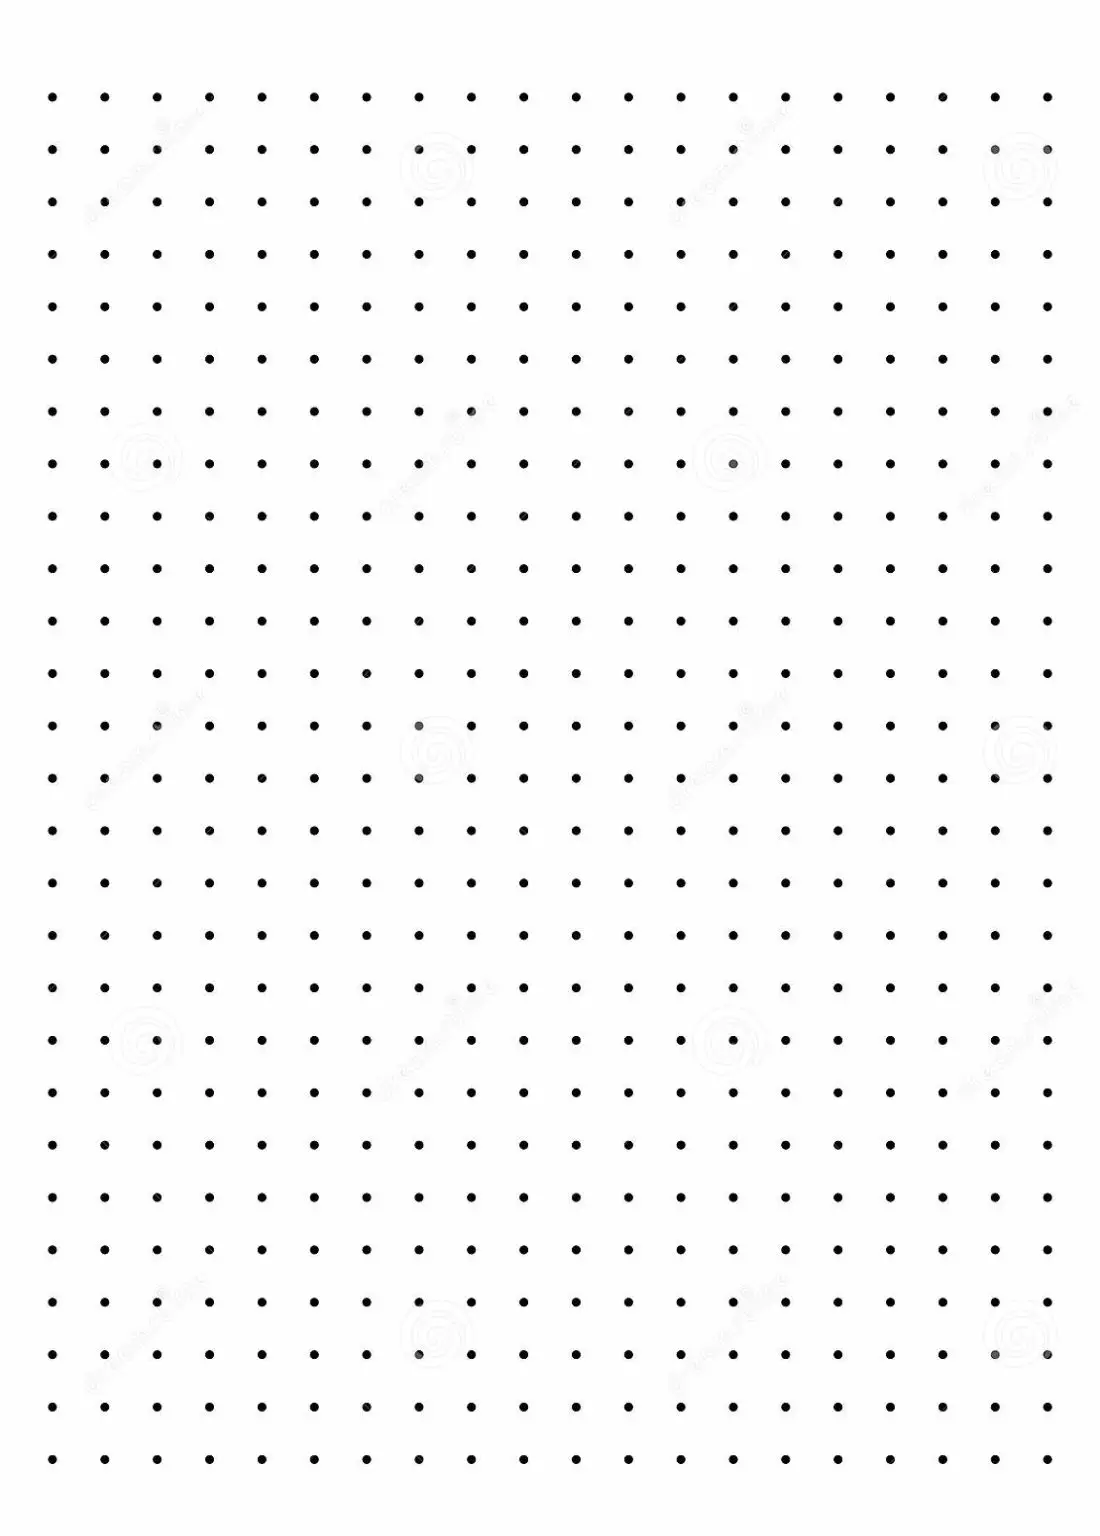 Free Printable Dot Paper or Dot Graph Template PDF